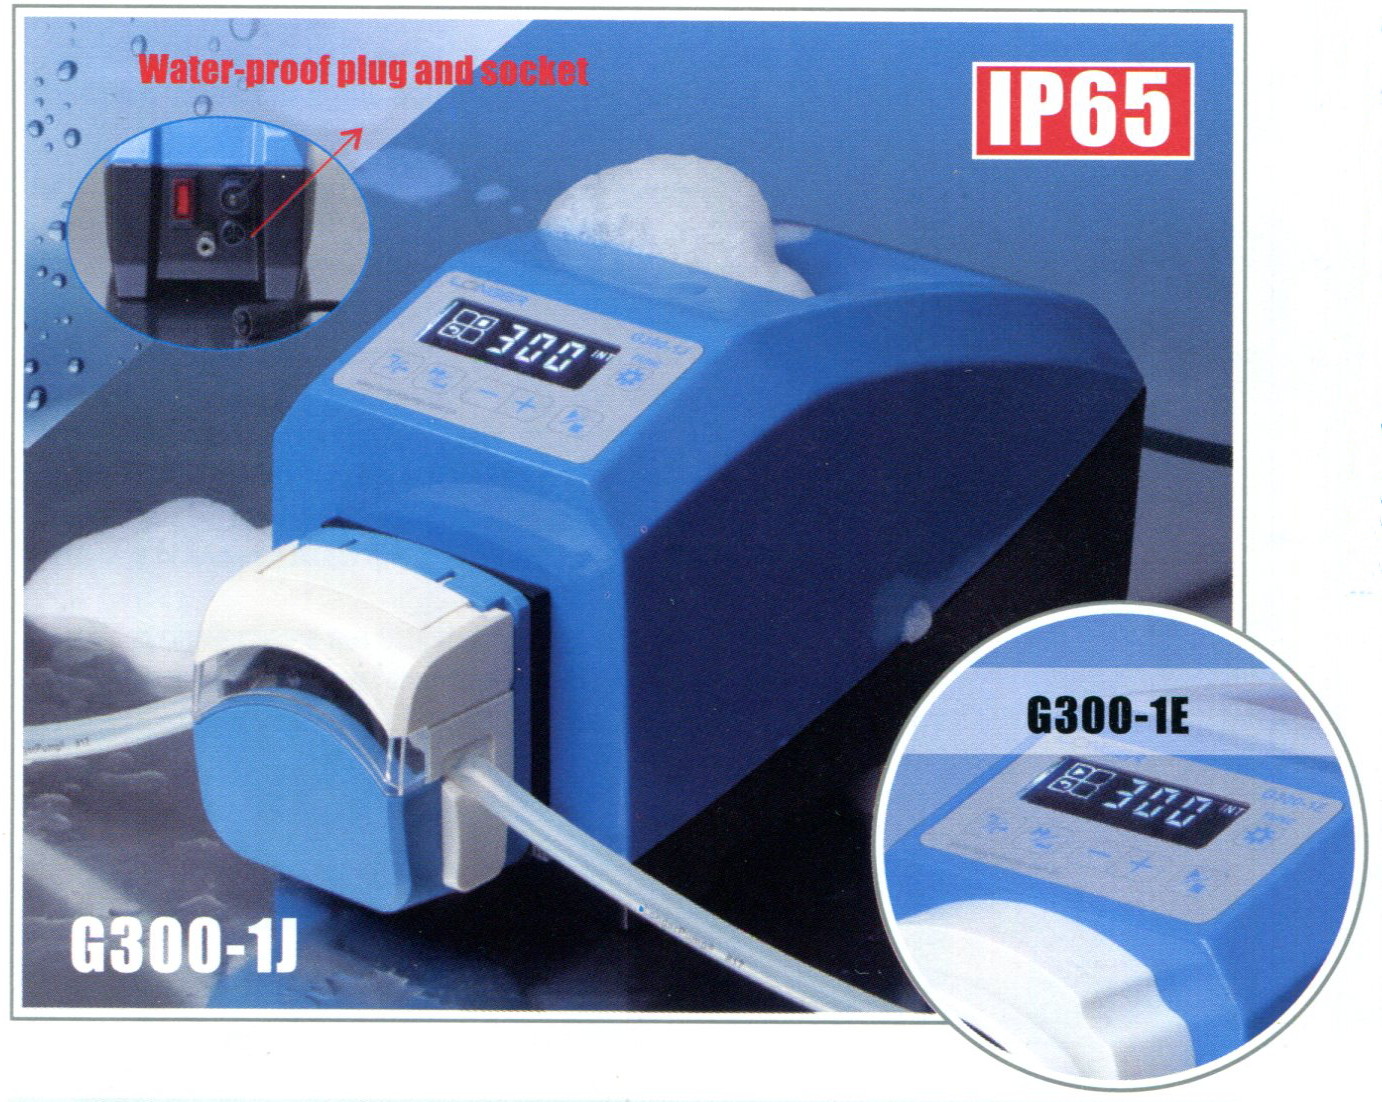 Longer pump, Peristaltic pump, G300-1J, G300-1E